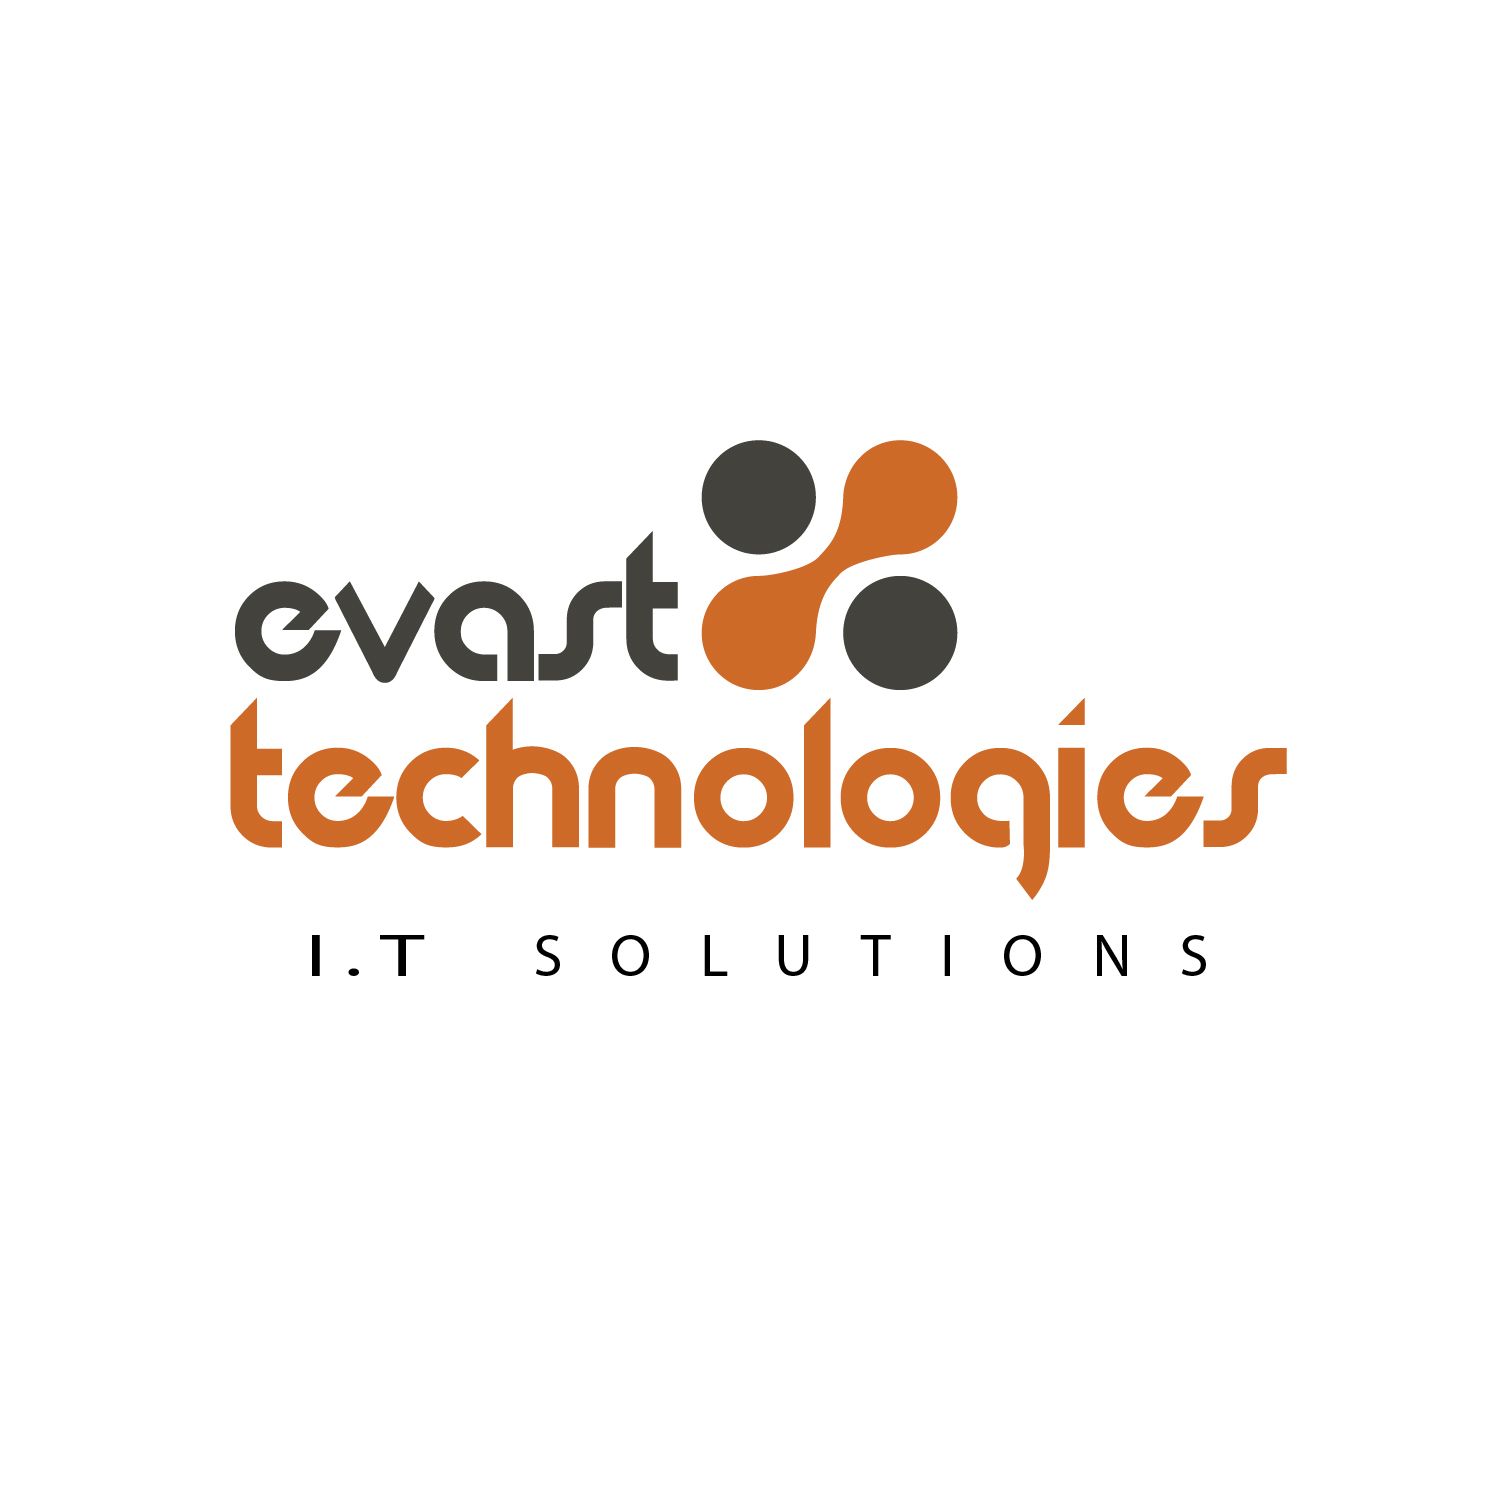 evasttechnologies Logo